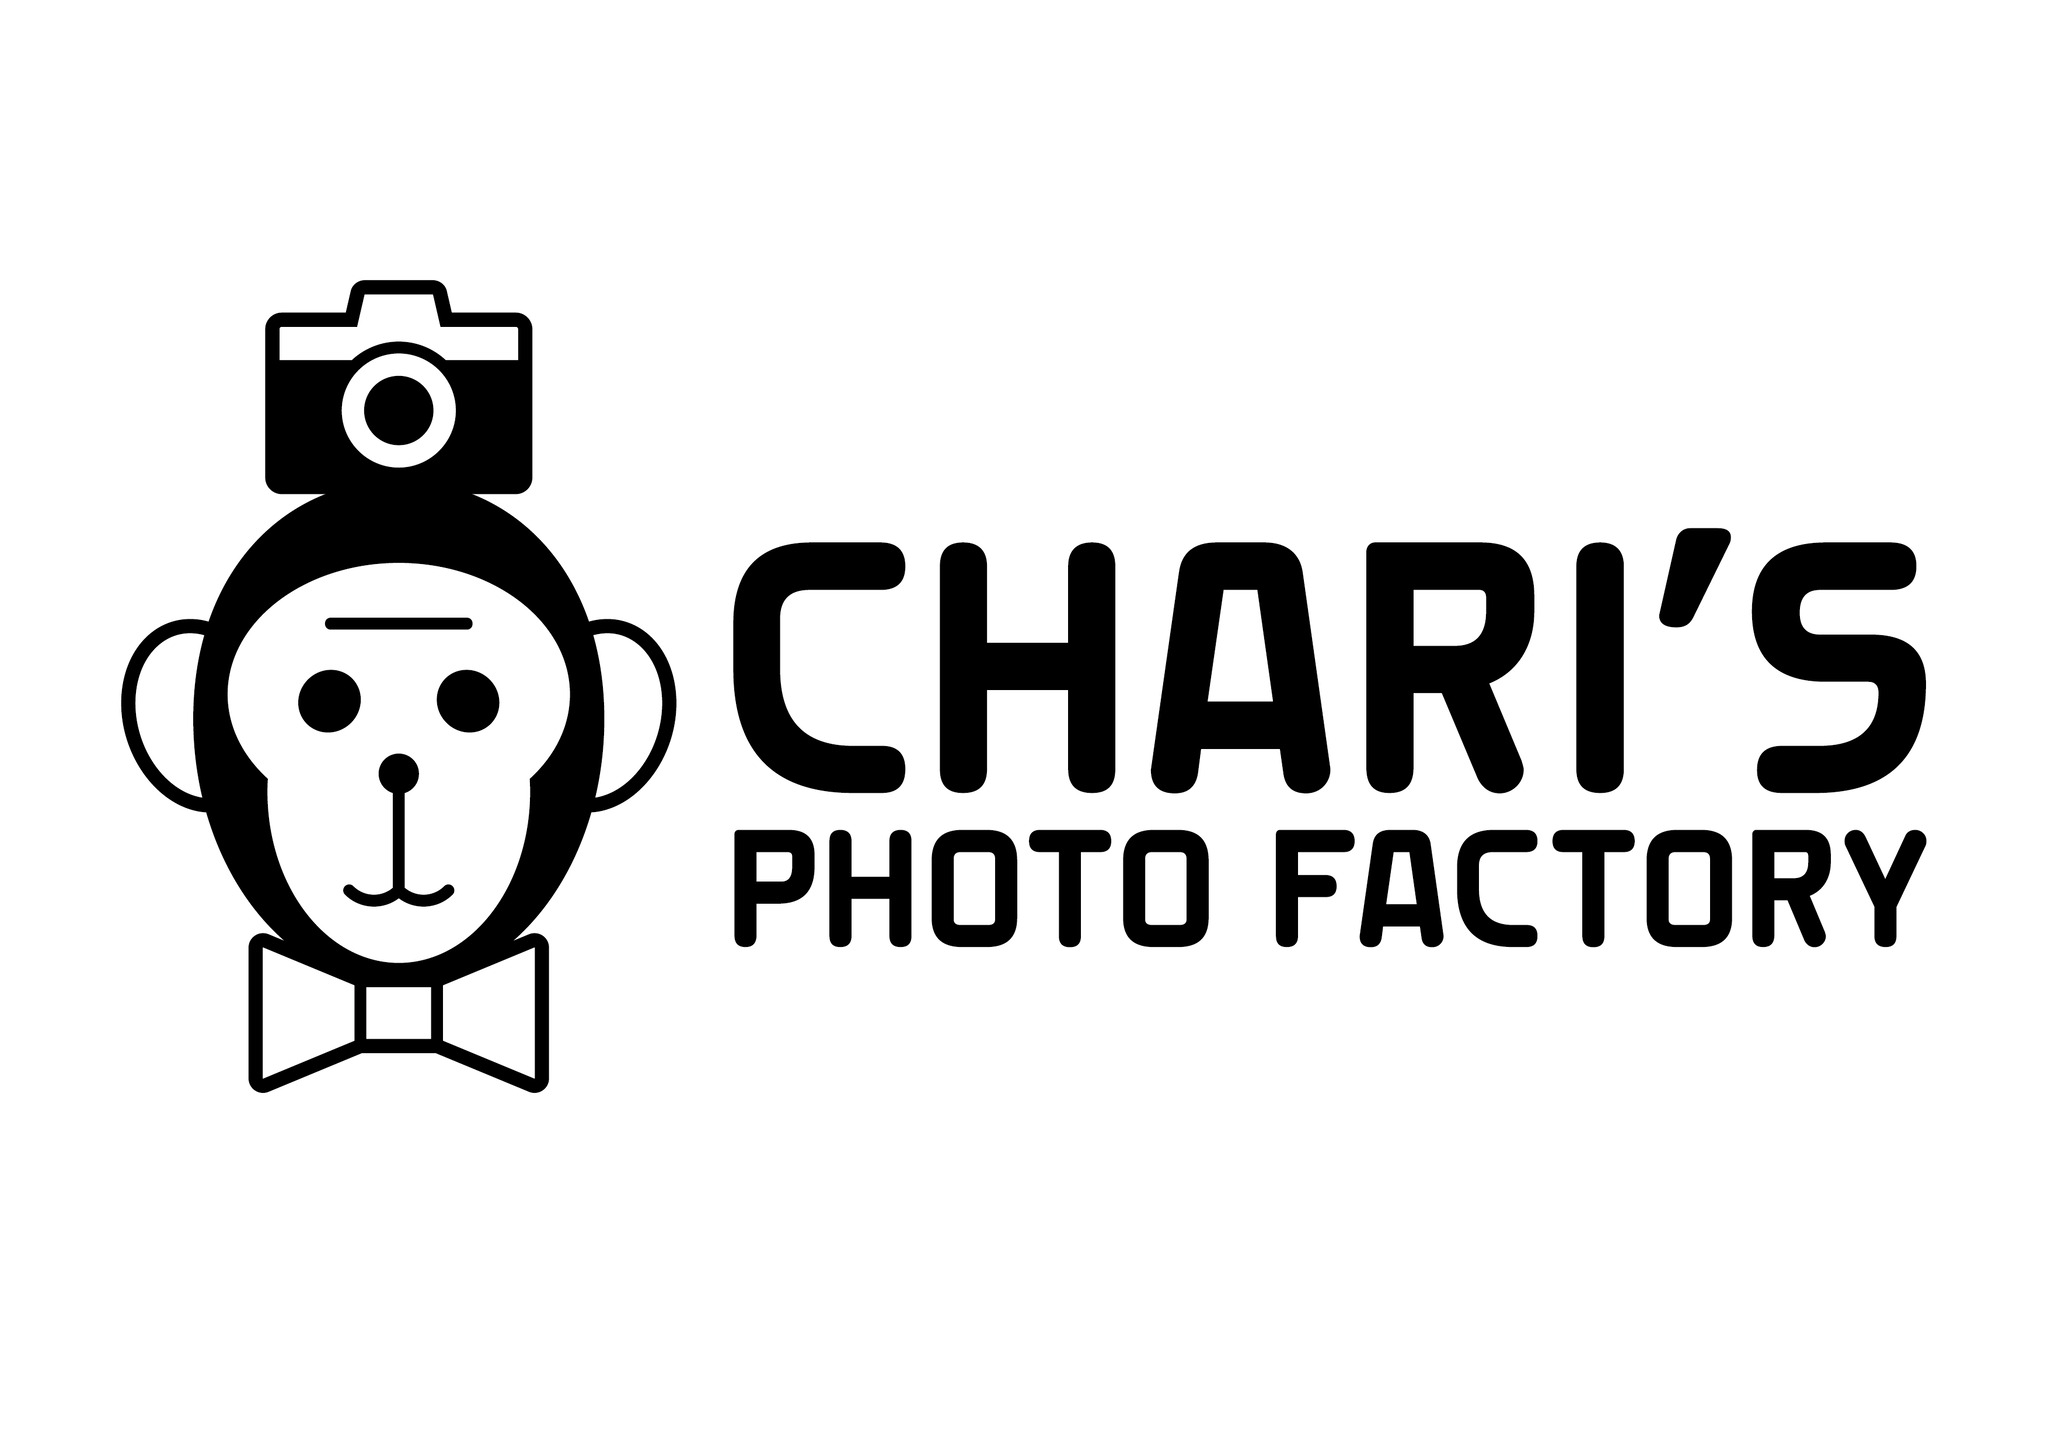 charis photo factory by ものがたりスタジオ